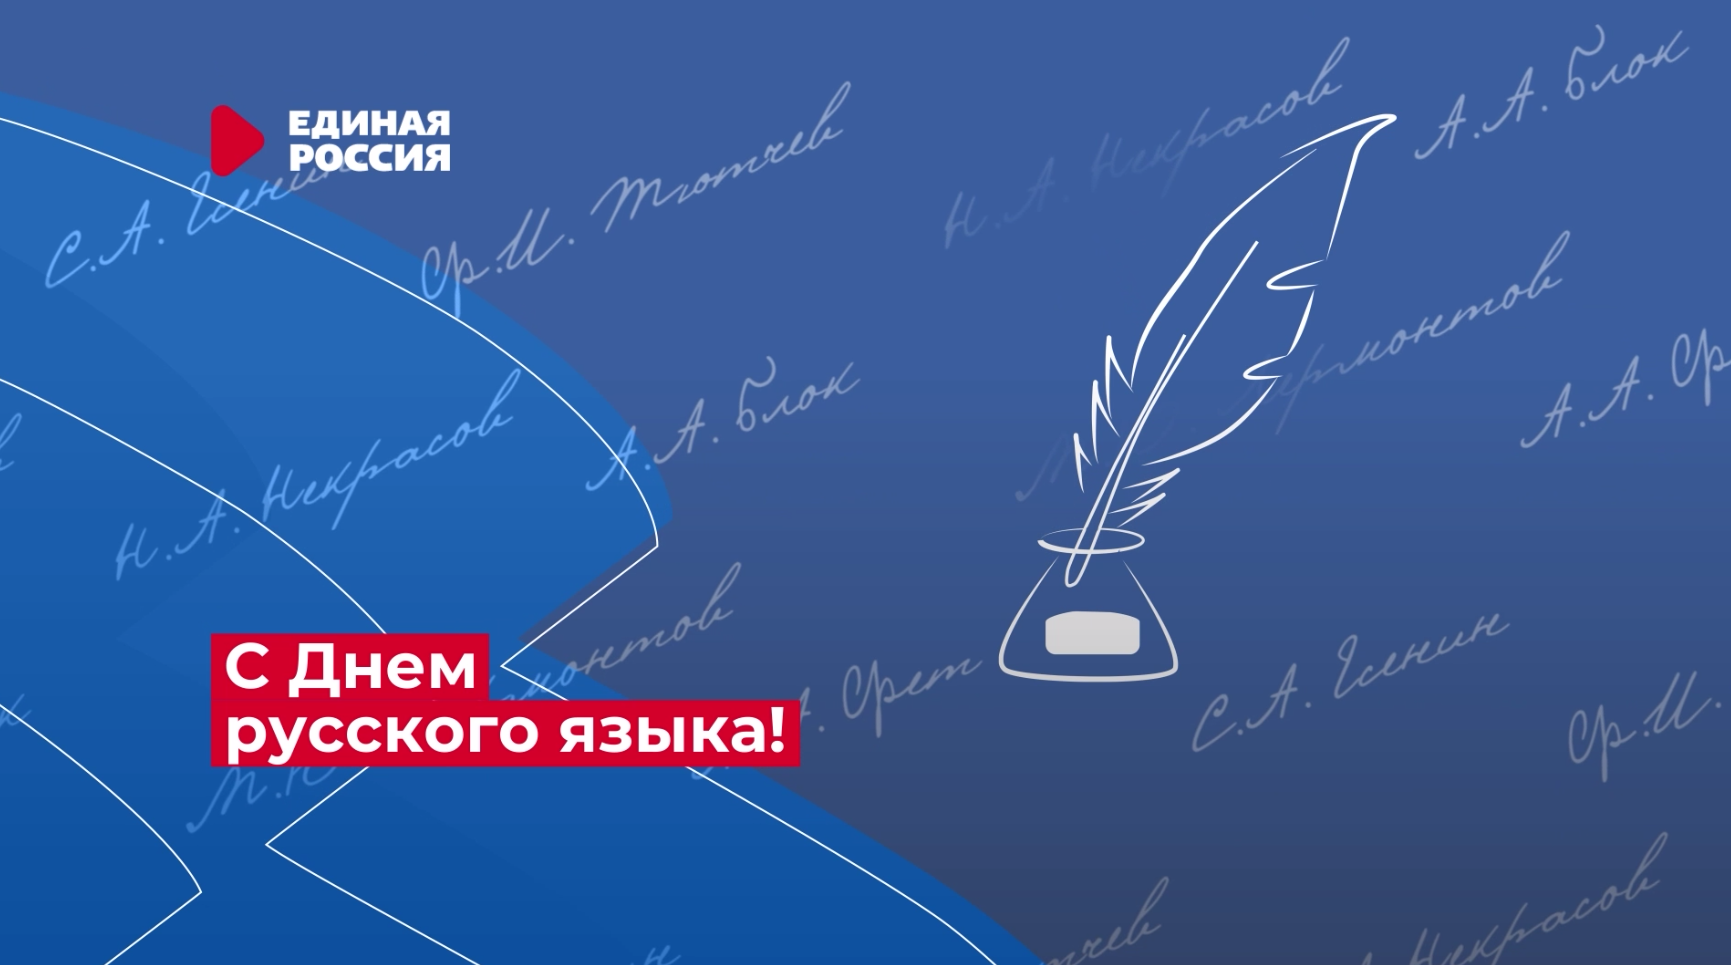 Поздравляем с Днем русского языка!